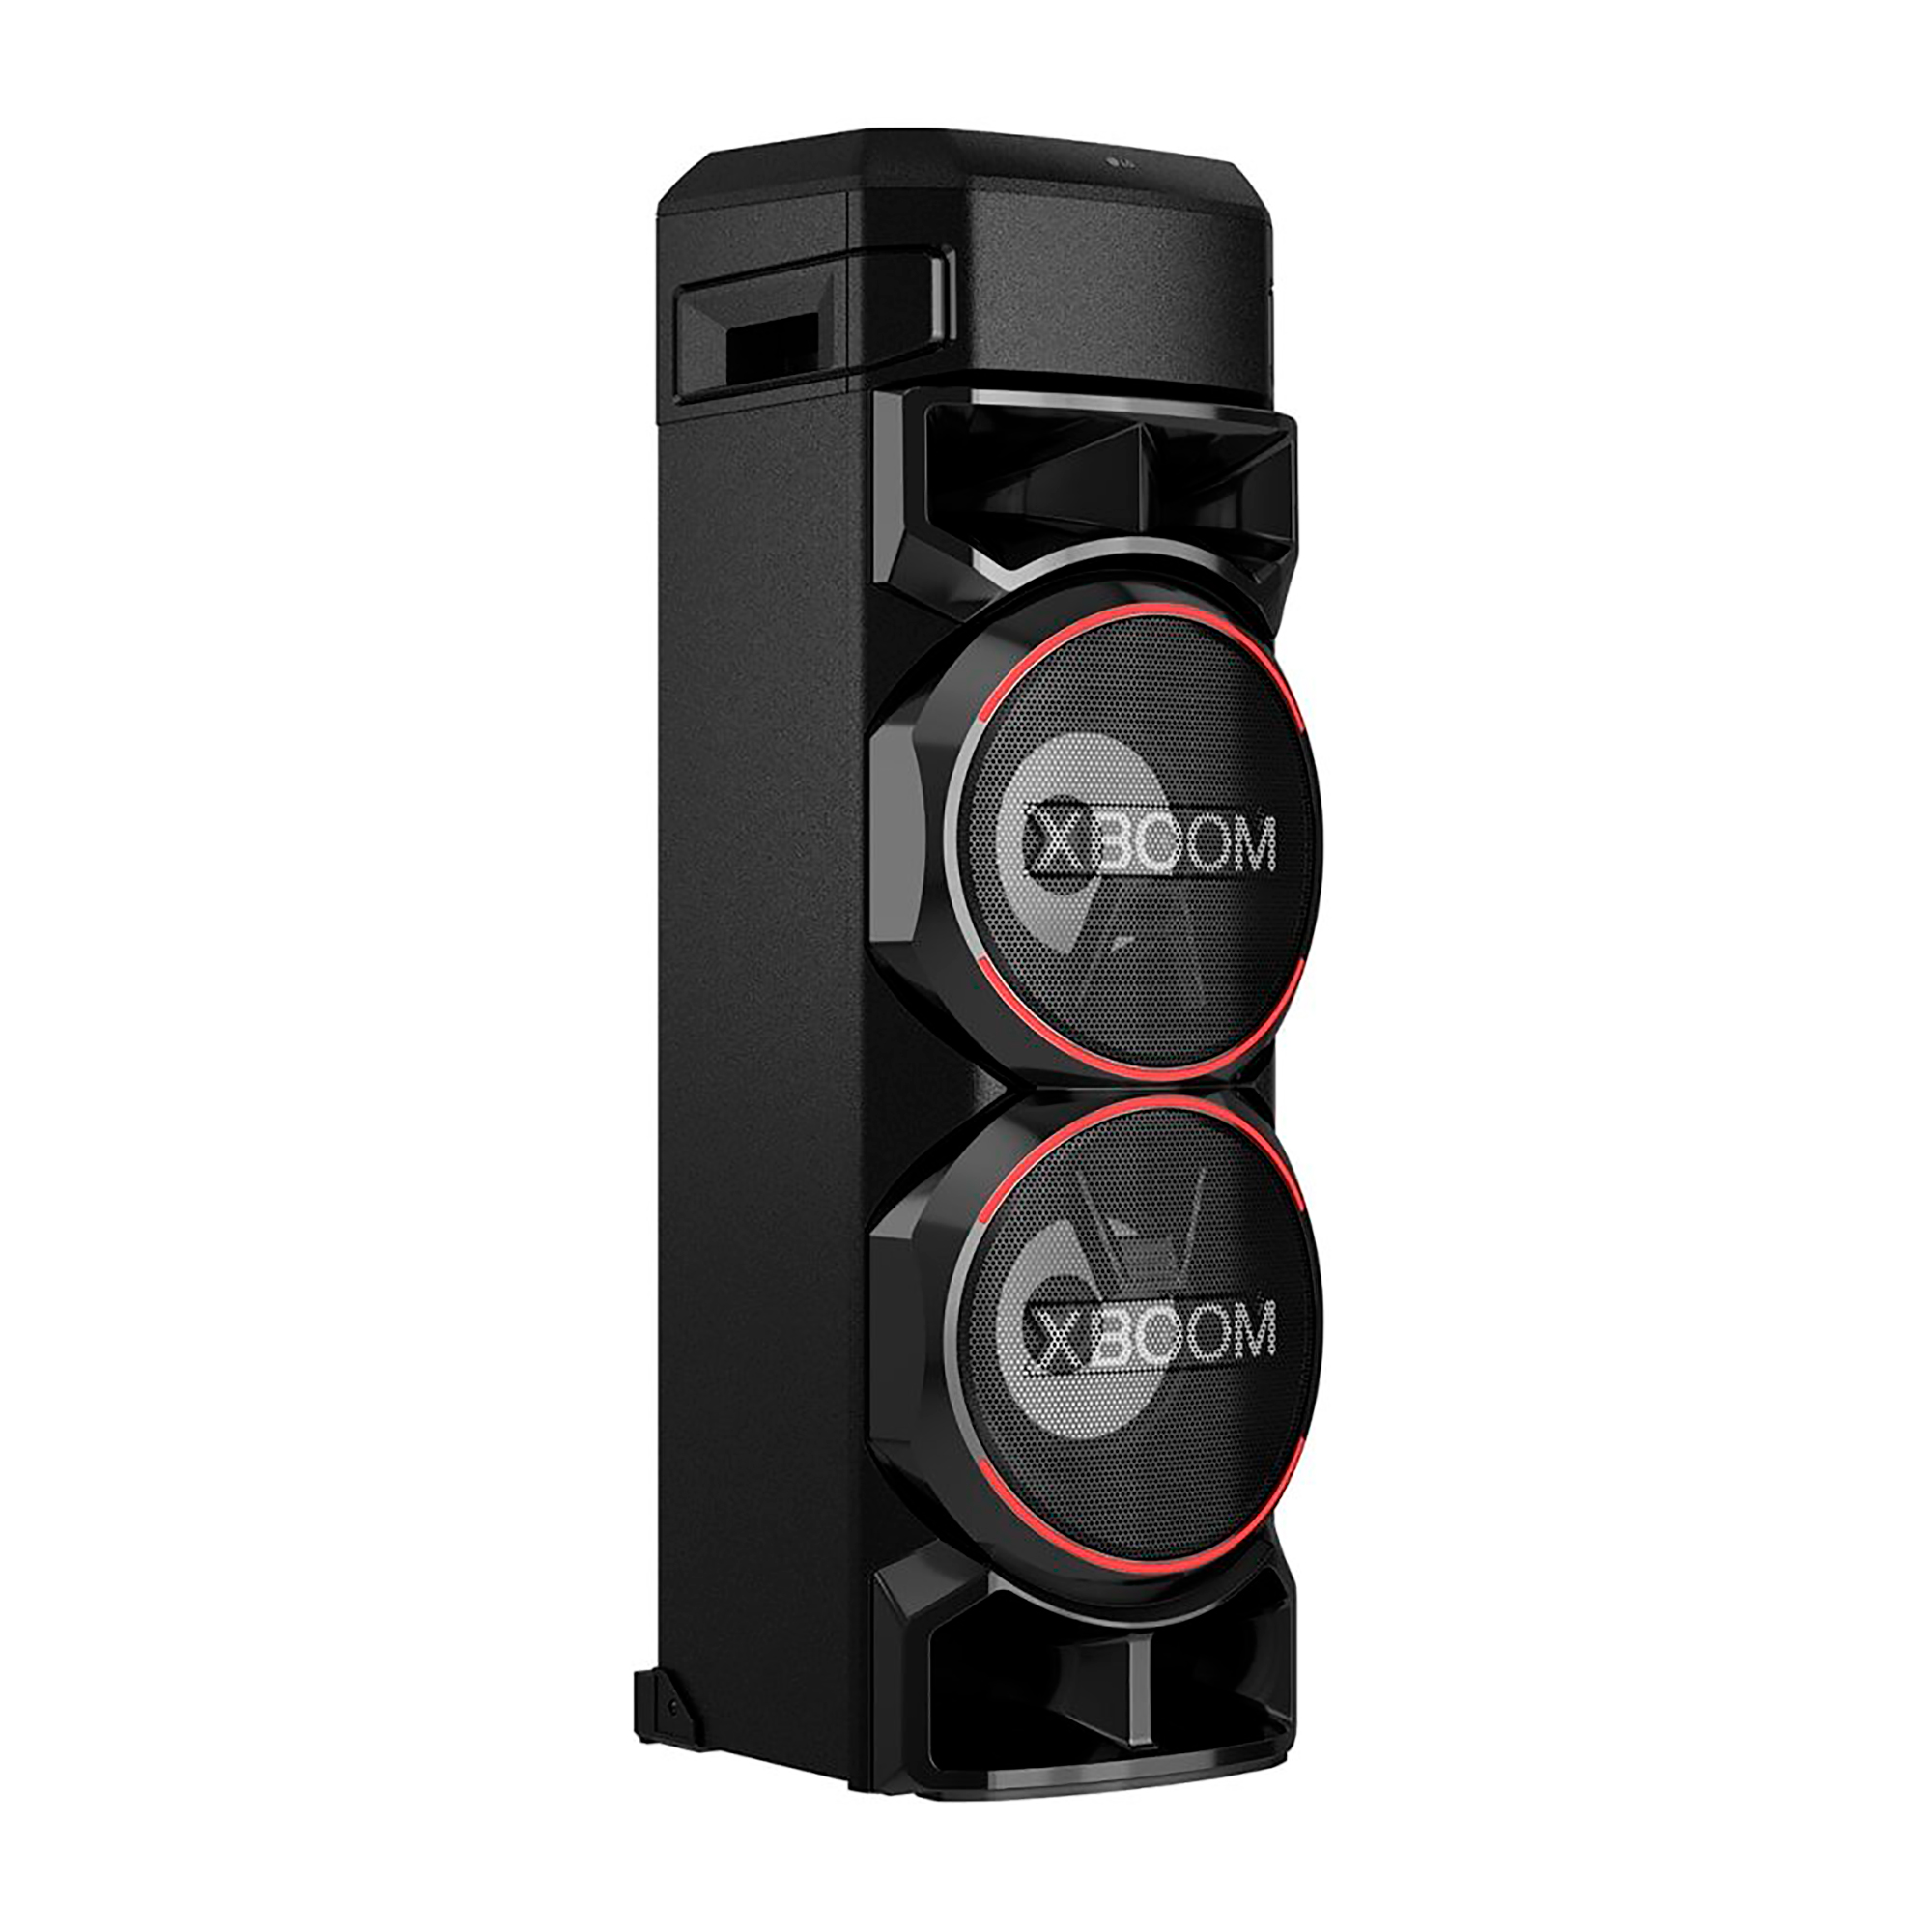 contar hasta Menagerry Mente Torre de sonido LG XBOOM RN9 - Multimax Store